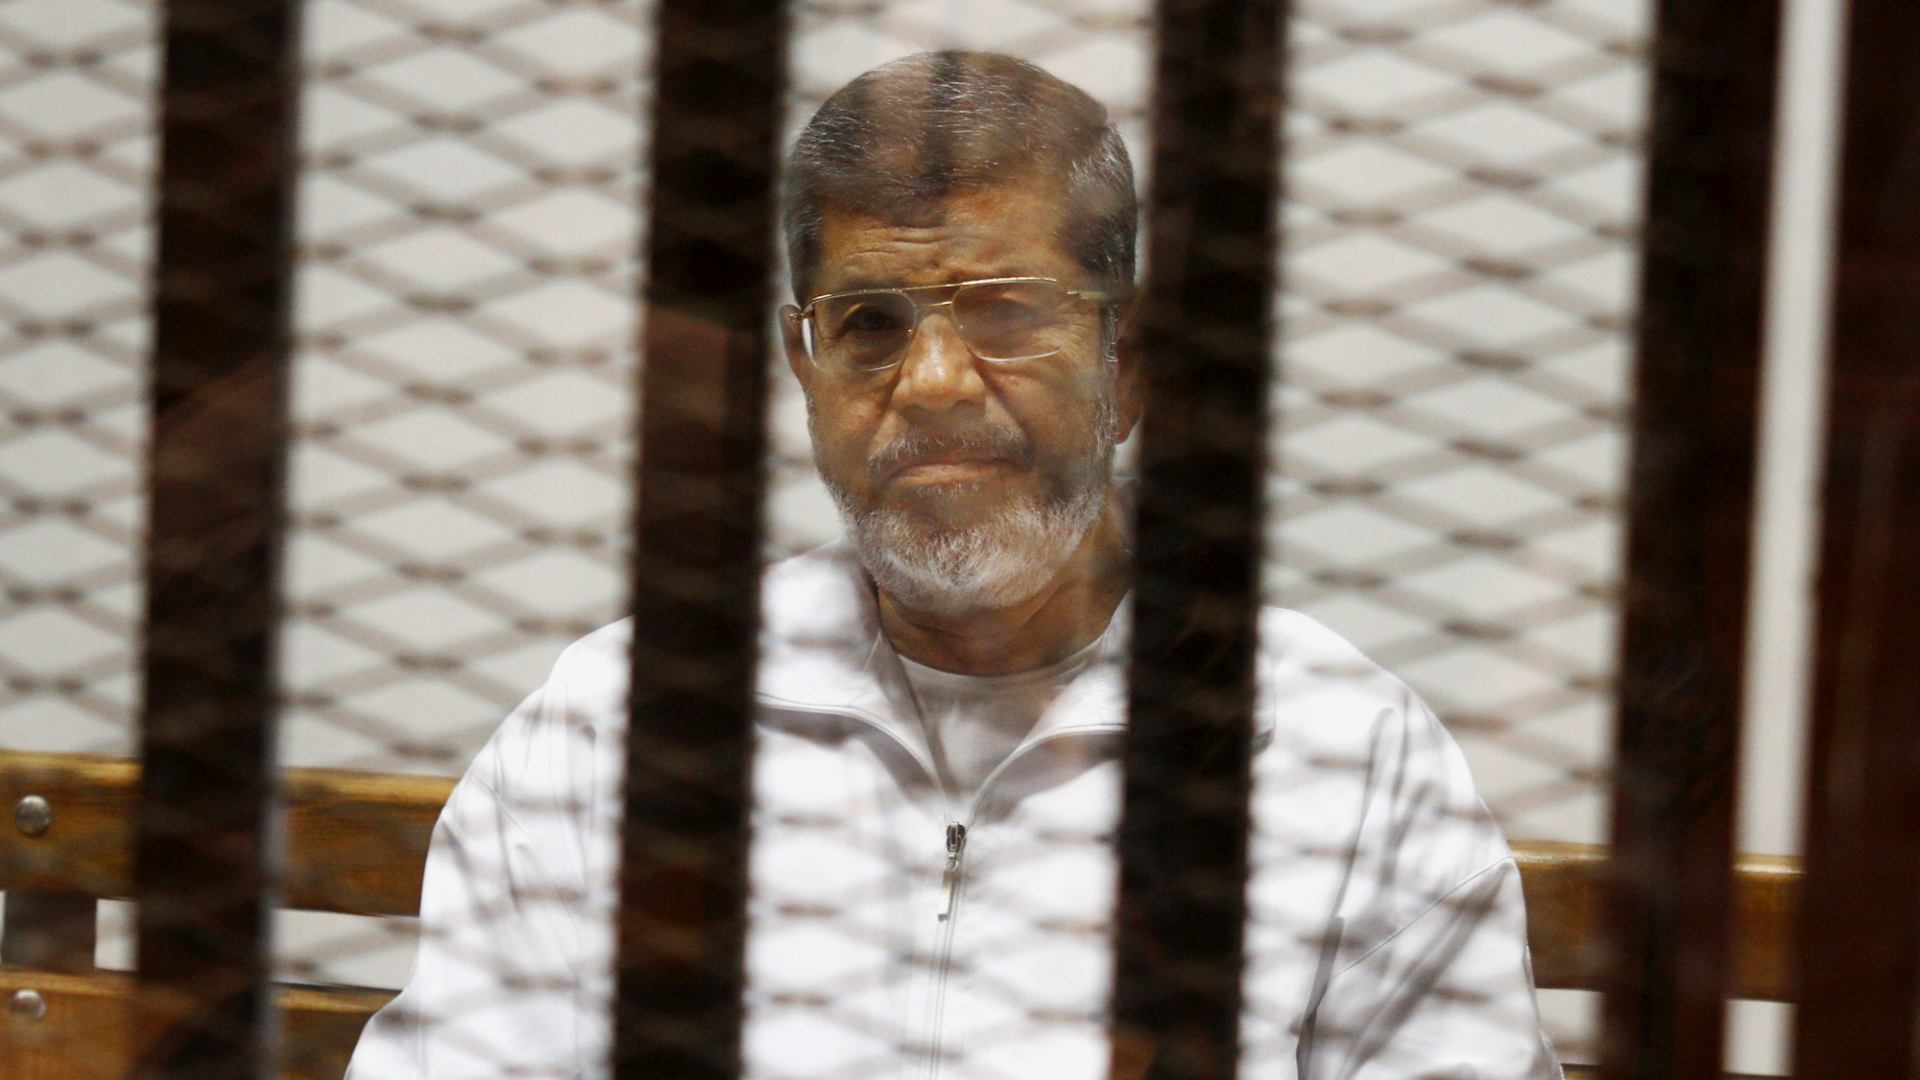 El derrocado presidente egipcio Mohamed Morsi muere durante una sesión de su juicio